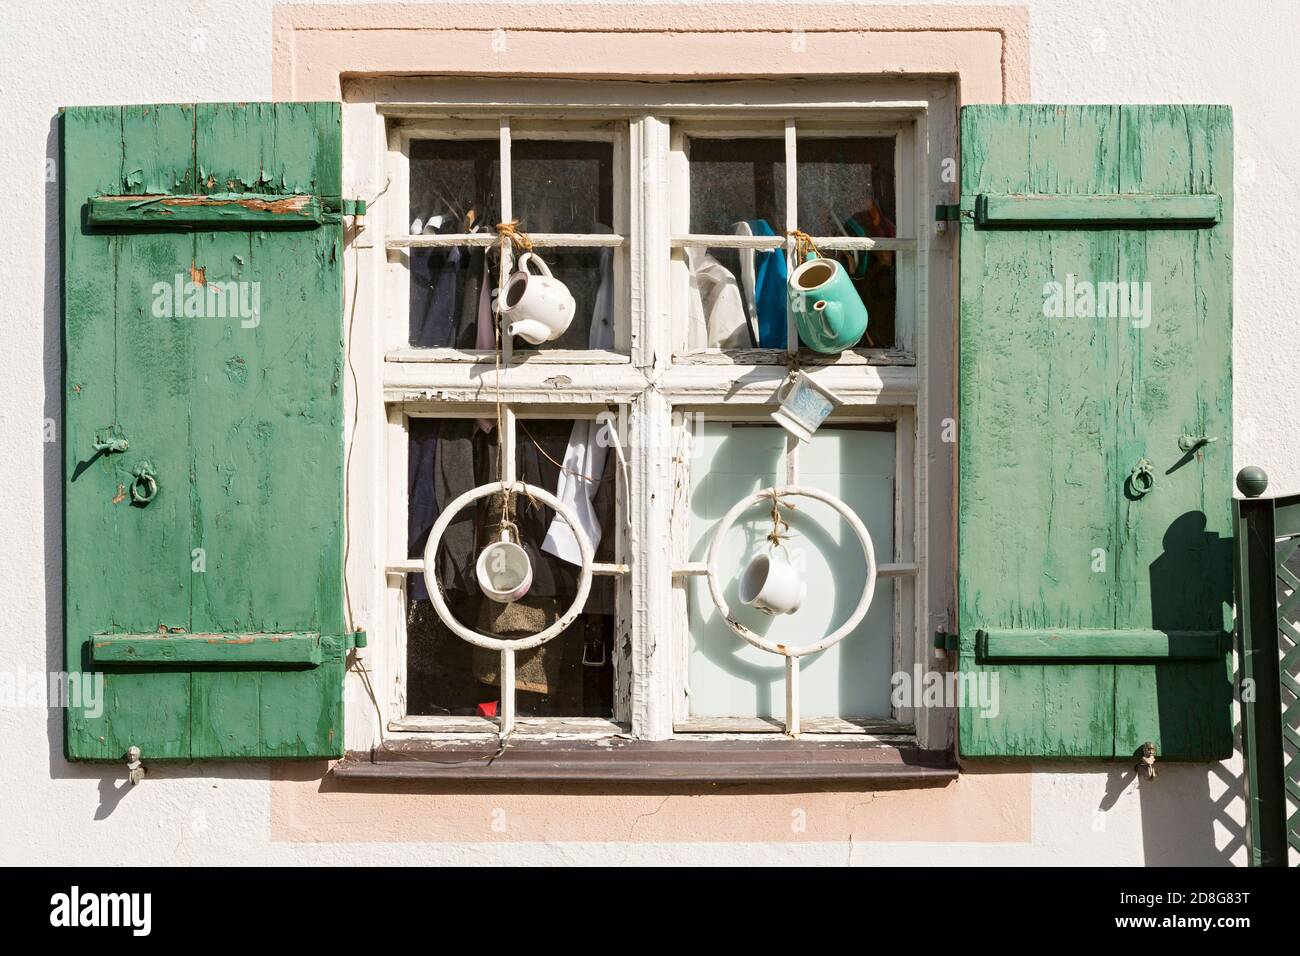 Beilngries, Innerer Graben, Wohnhaus, Fenster, Kunsthandwerk, Detail Stock Photo